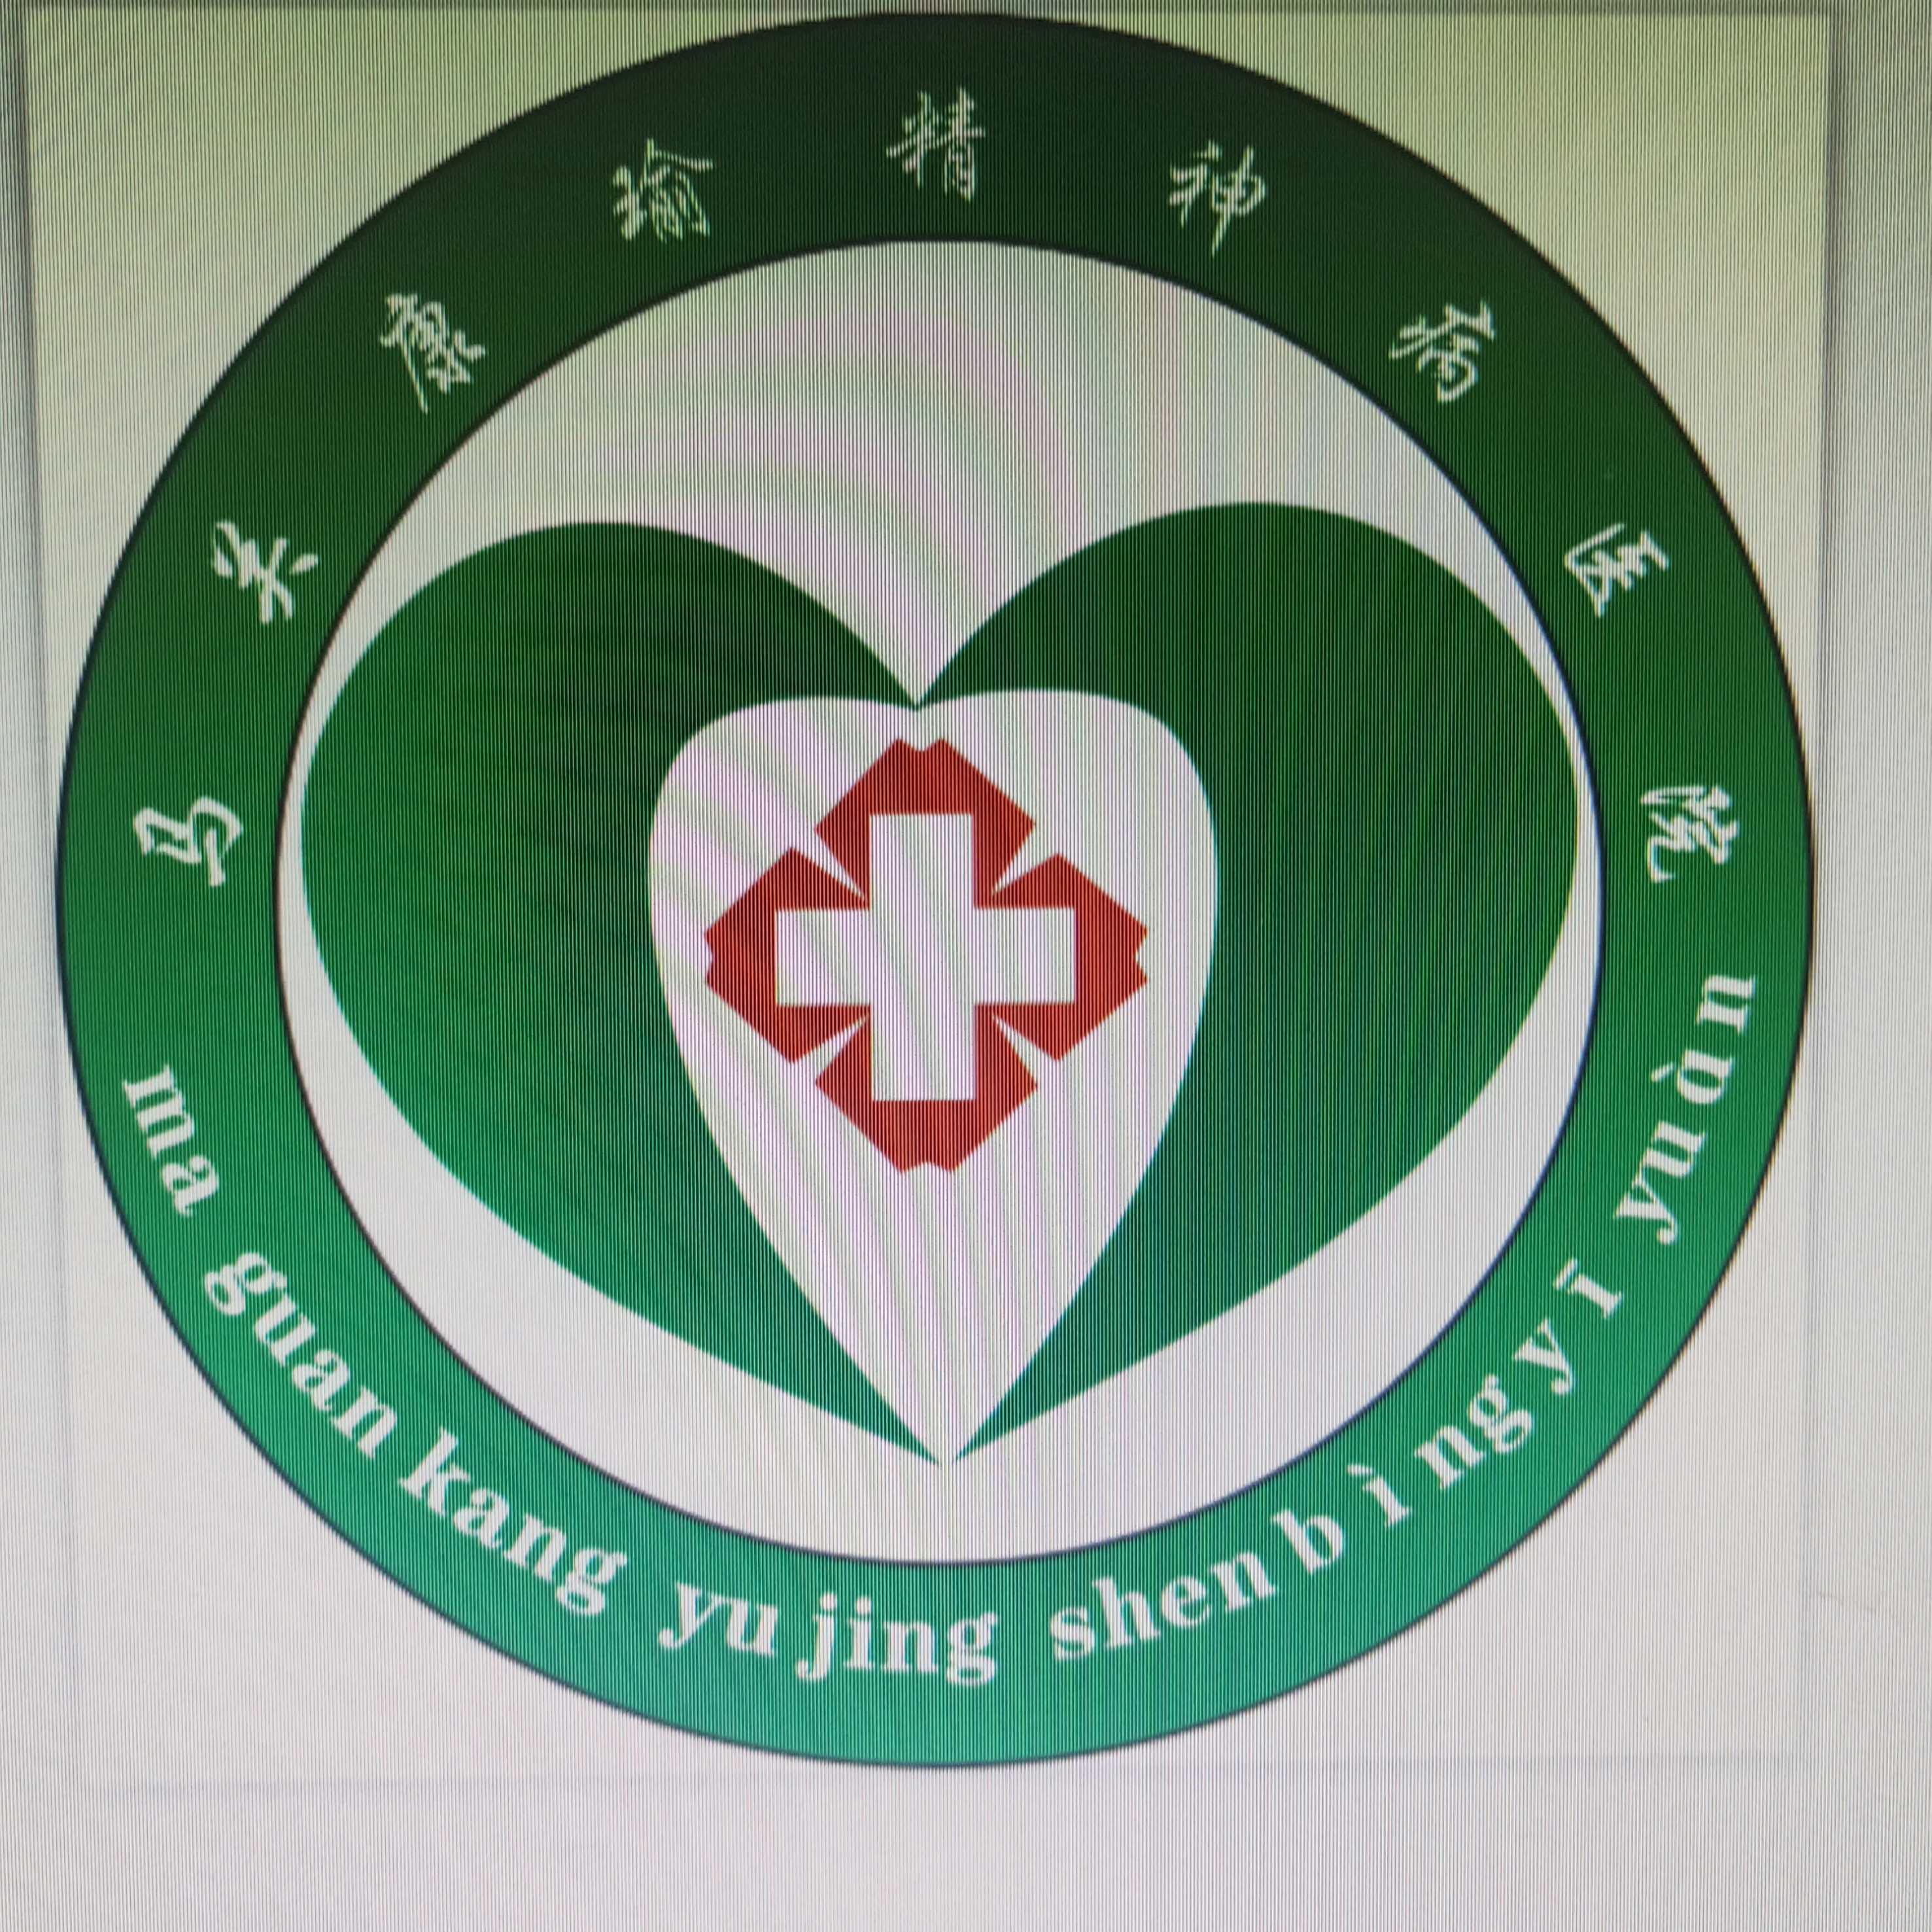 中国精神病医院logo图片